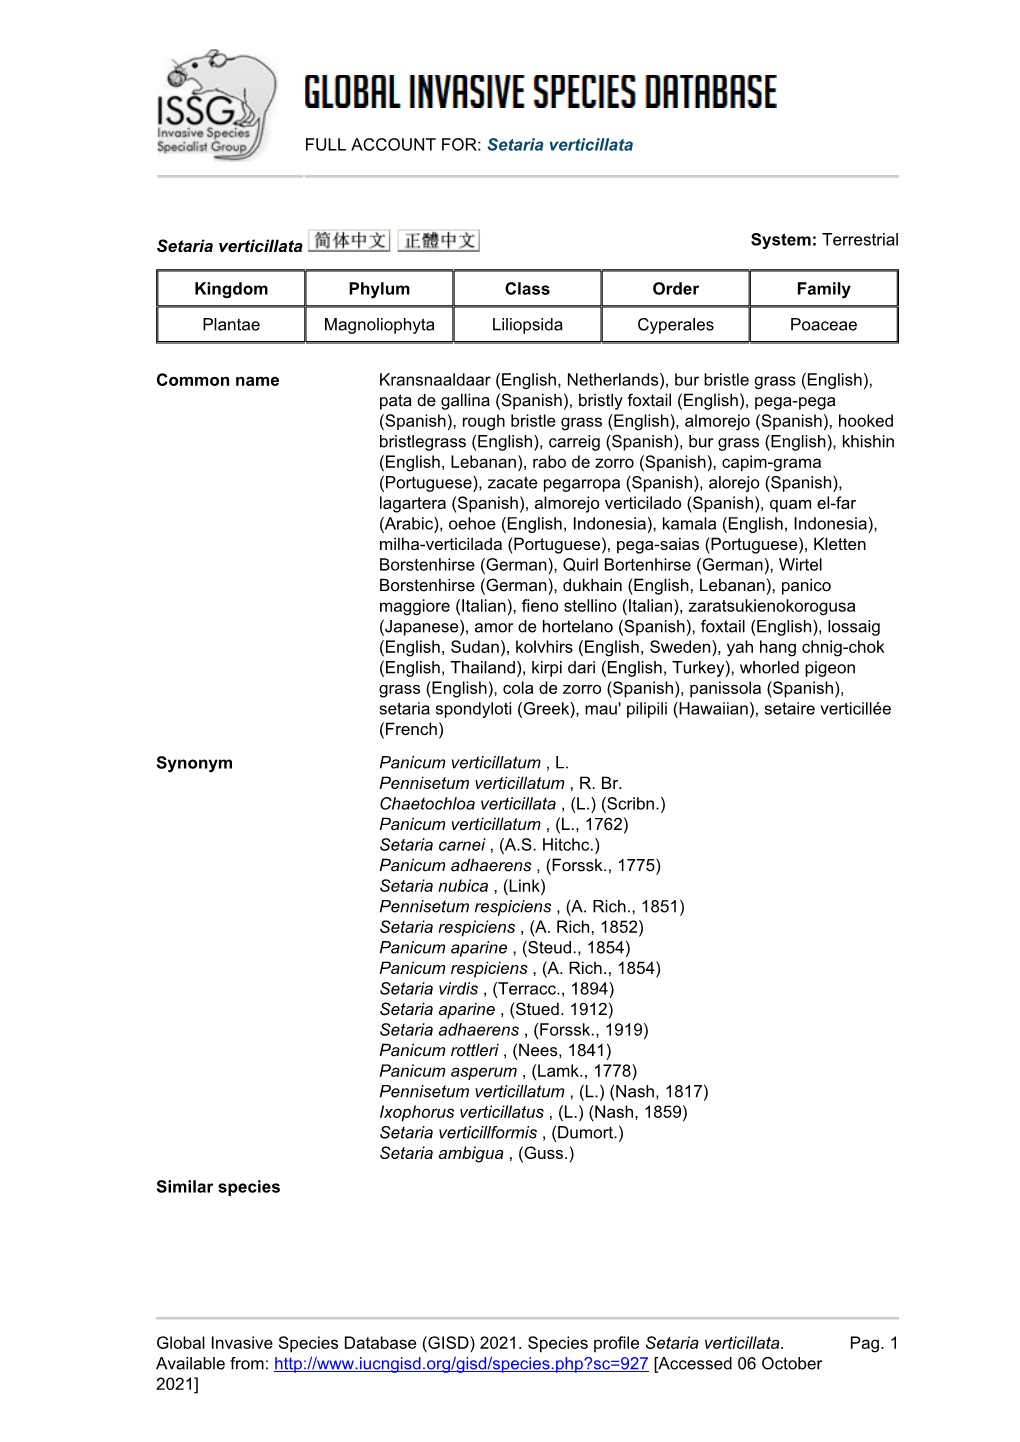 (GISD) 2021. Species Profile Setaria Verticillata. Avail